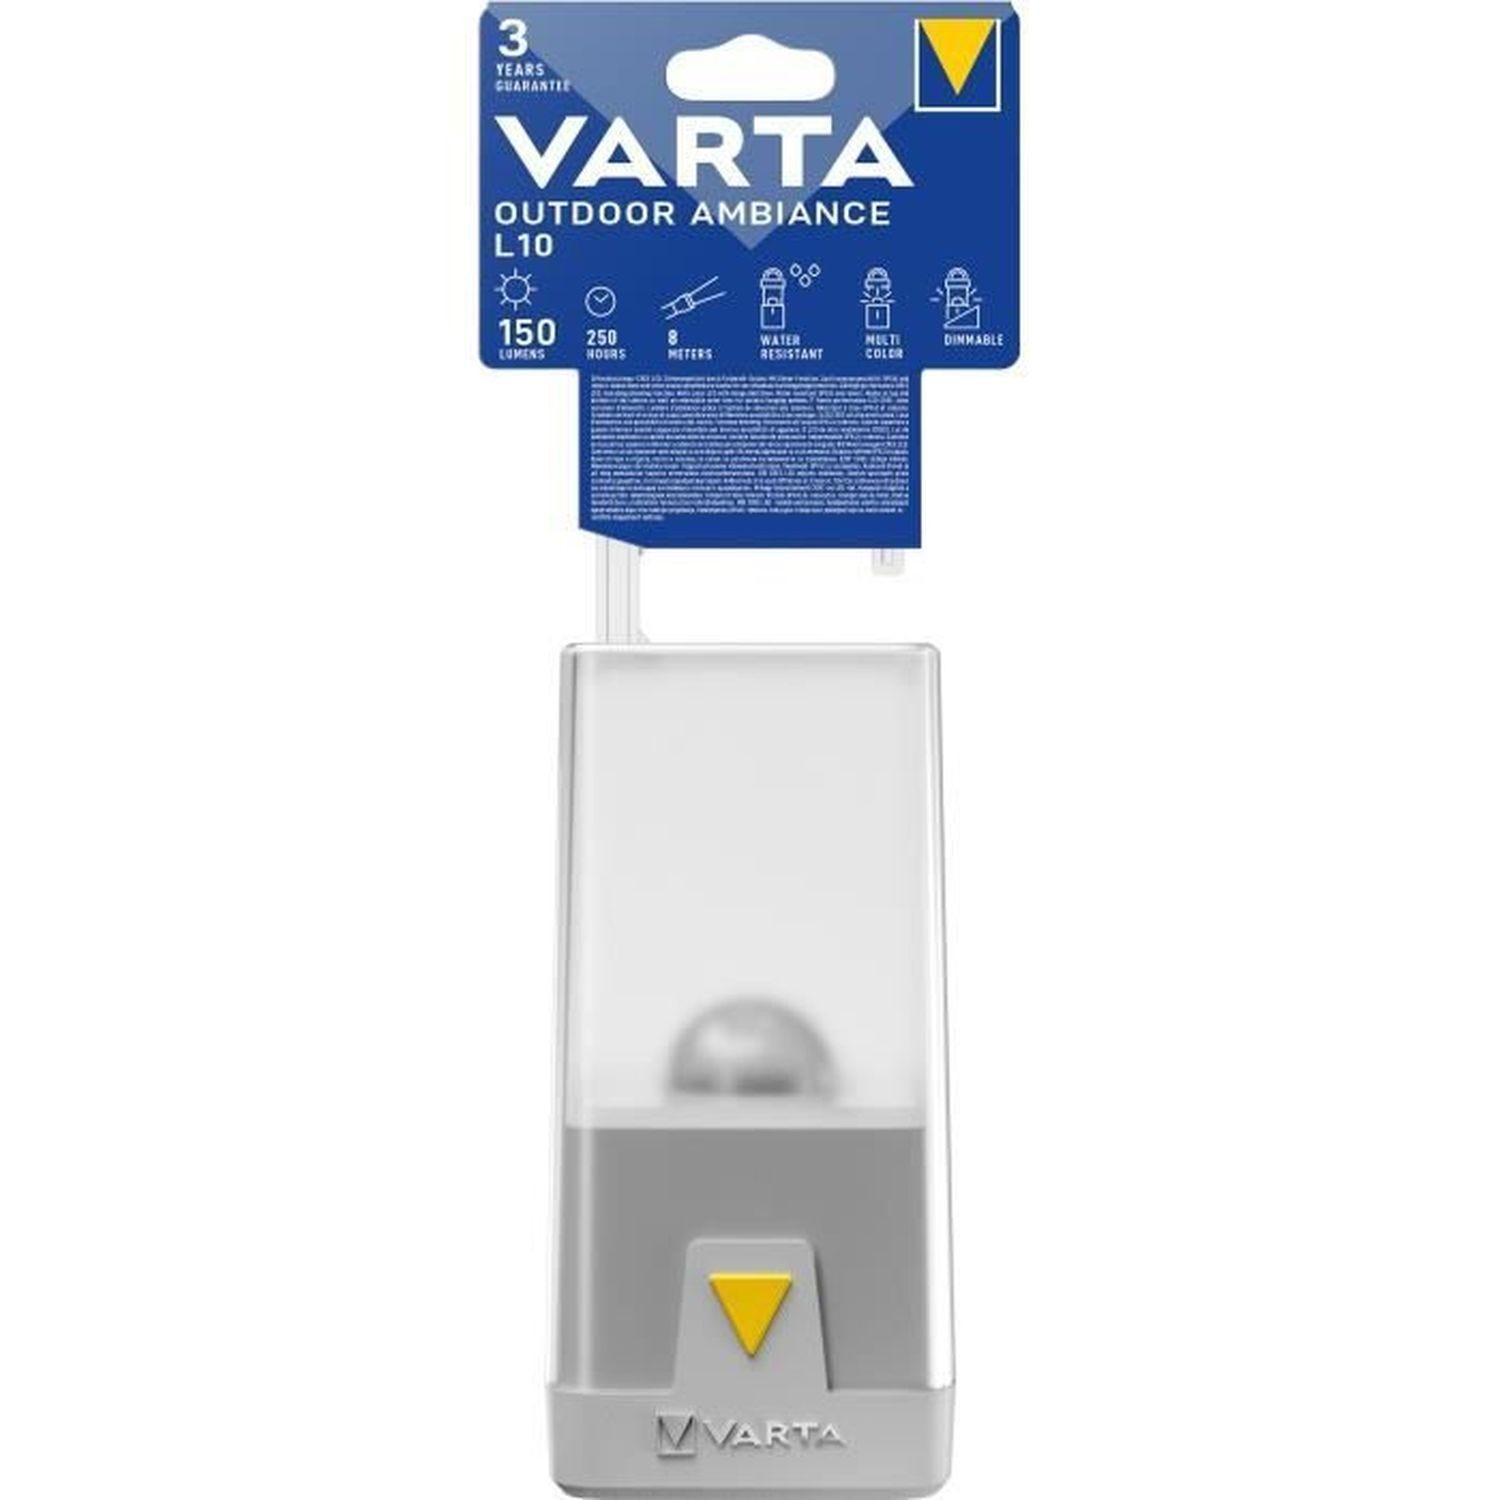 Lanterne-VARTA - 6 couleurs de lumiere - VARTA 0